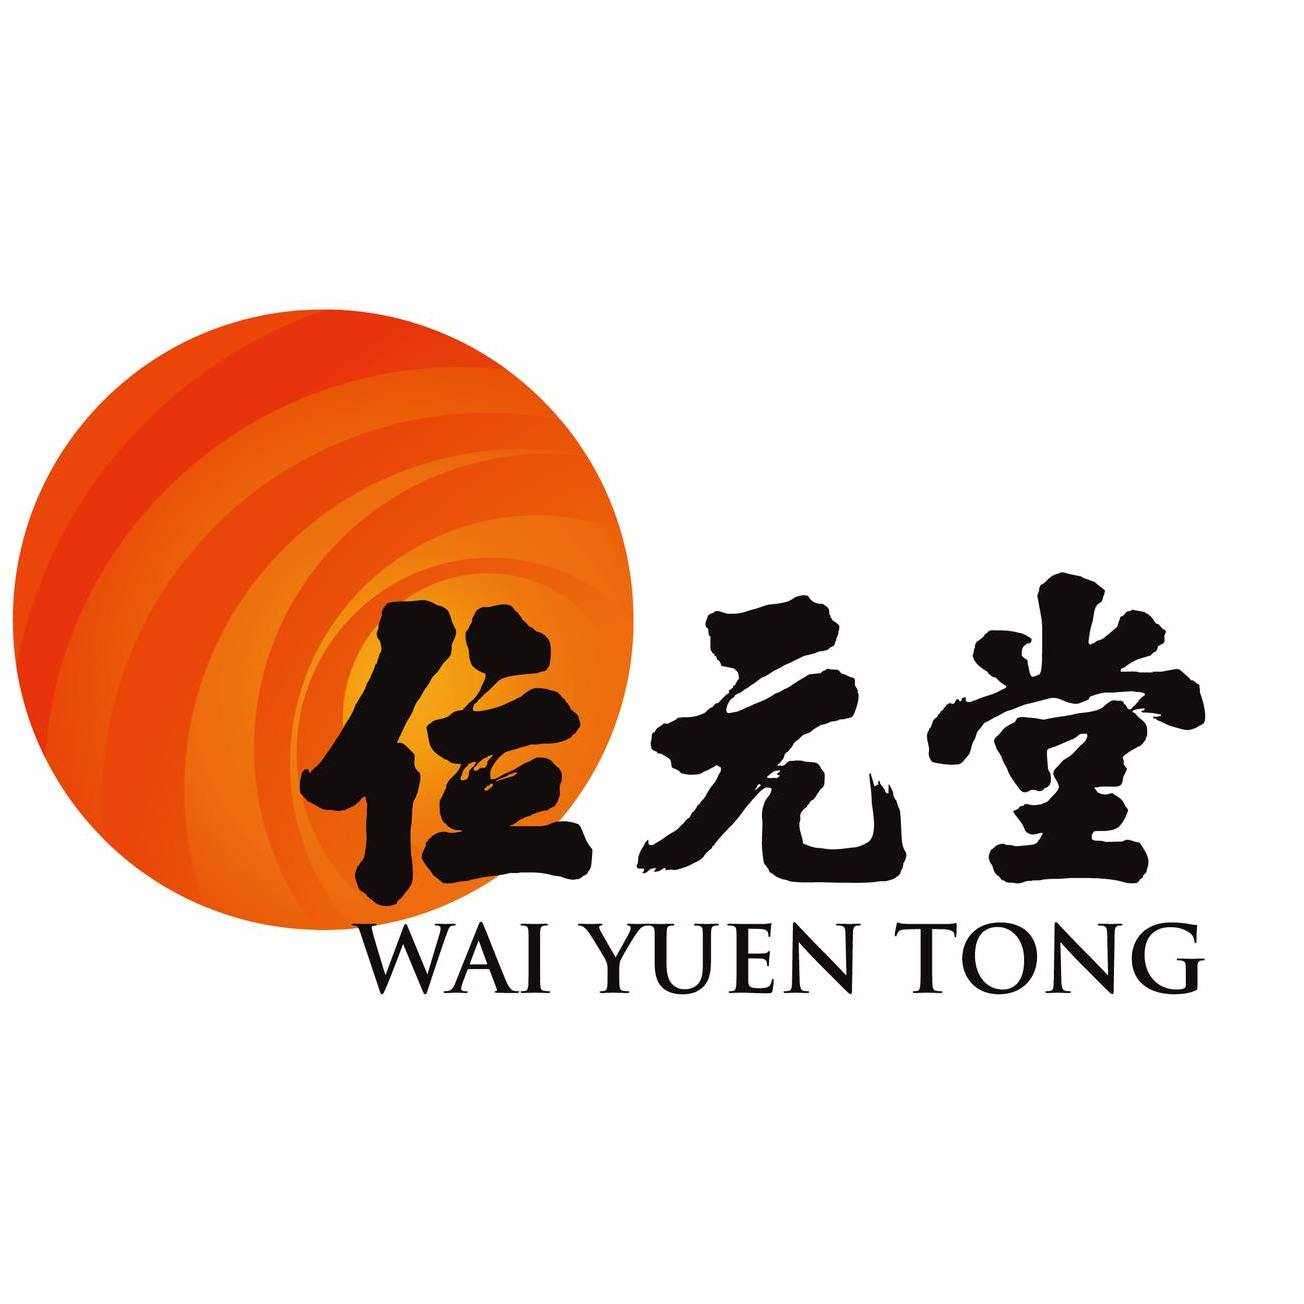 Hong Kong Flower Shop GGB brands Wai Yuen Tong